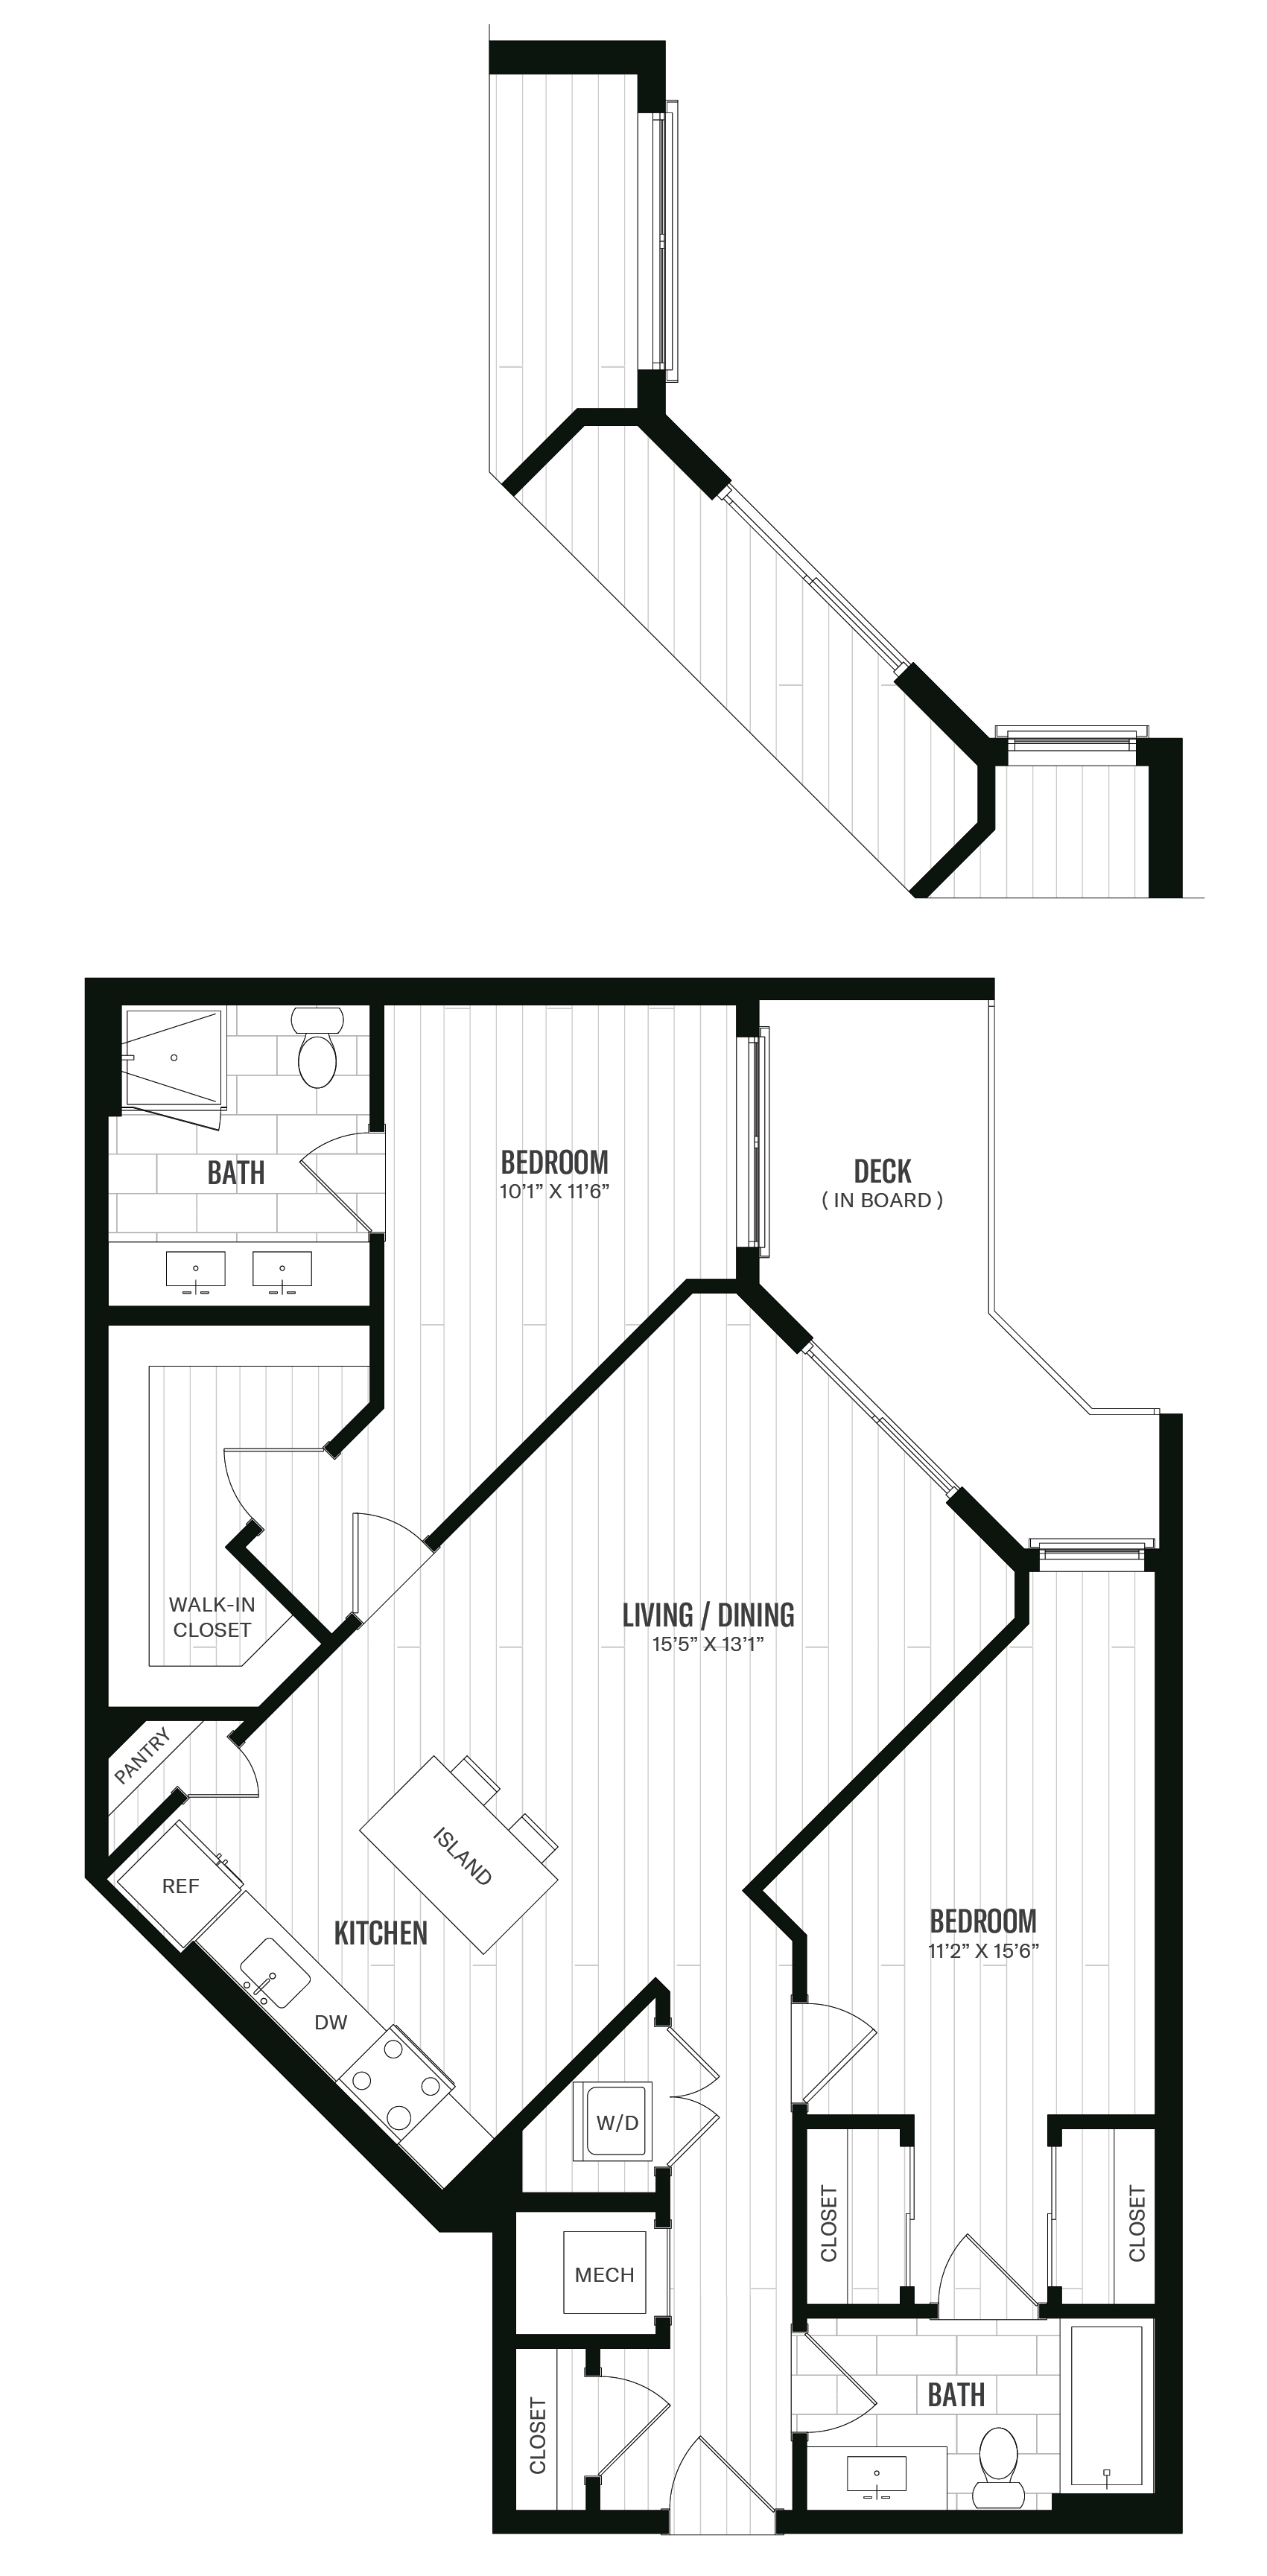 Floorplan image of unit 425